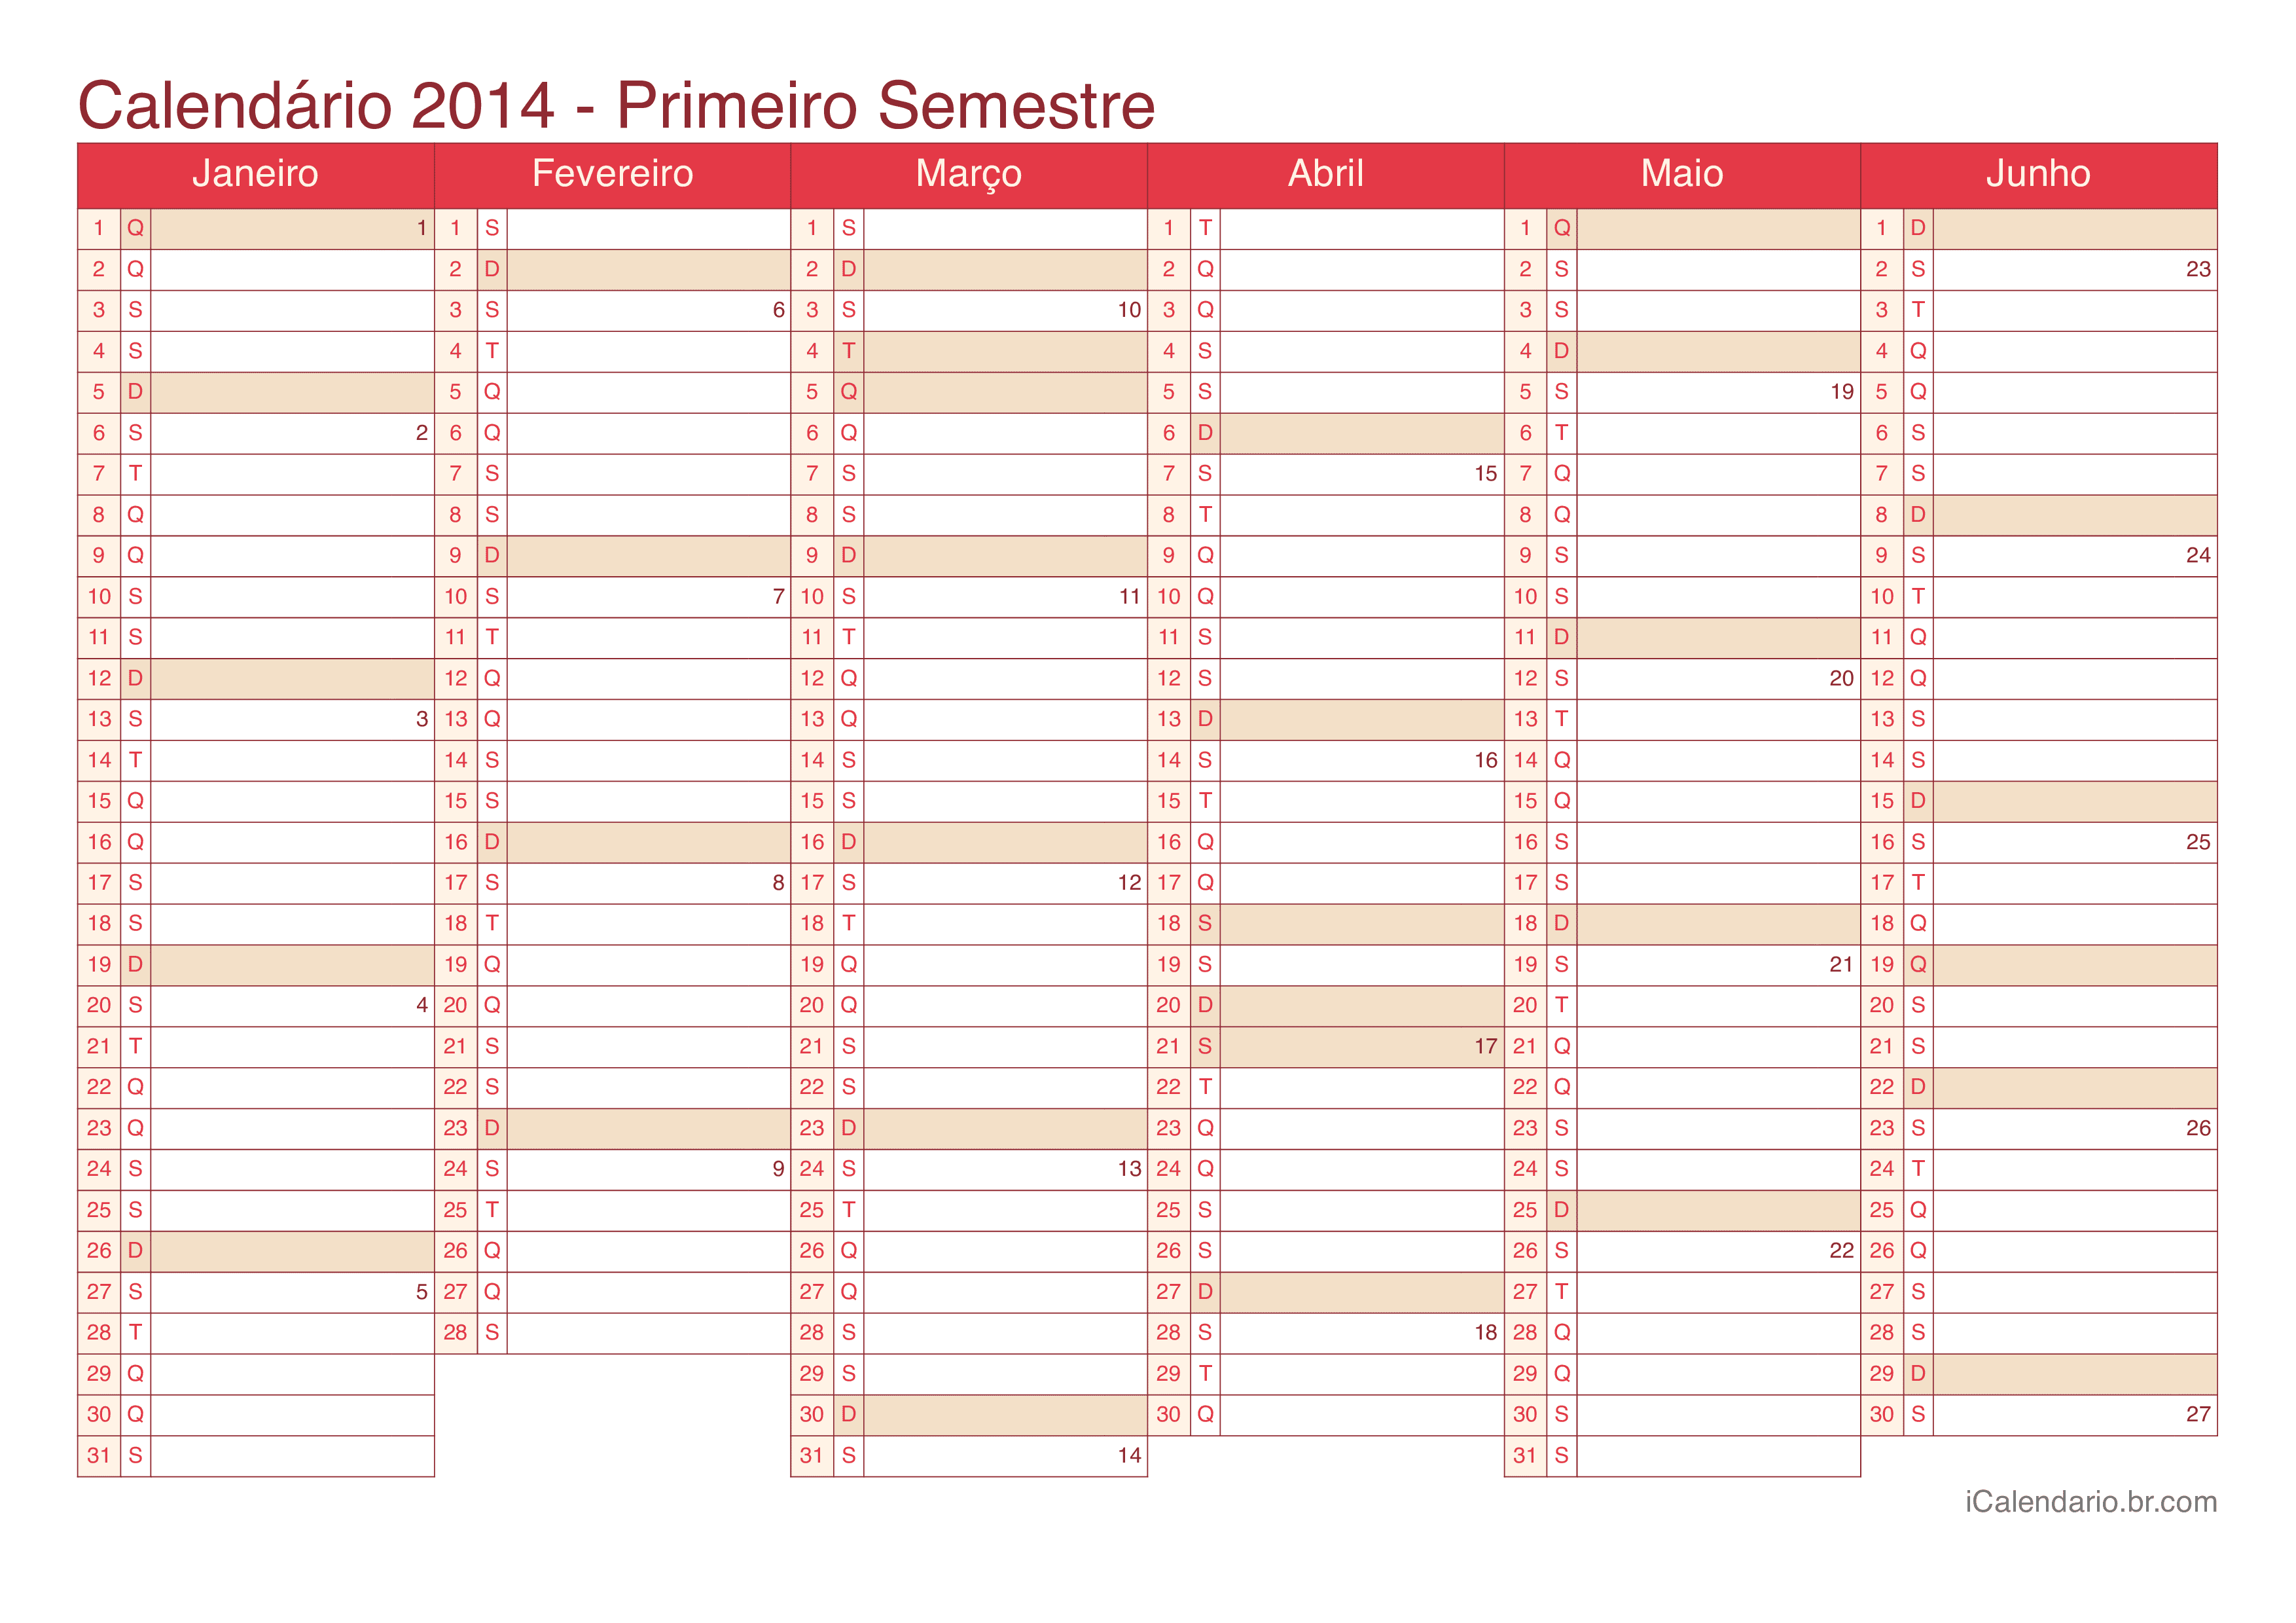 Calendário por semestre com números da semana 2014 - Cherry